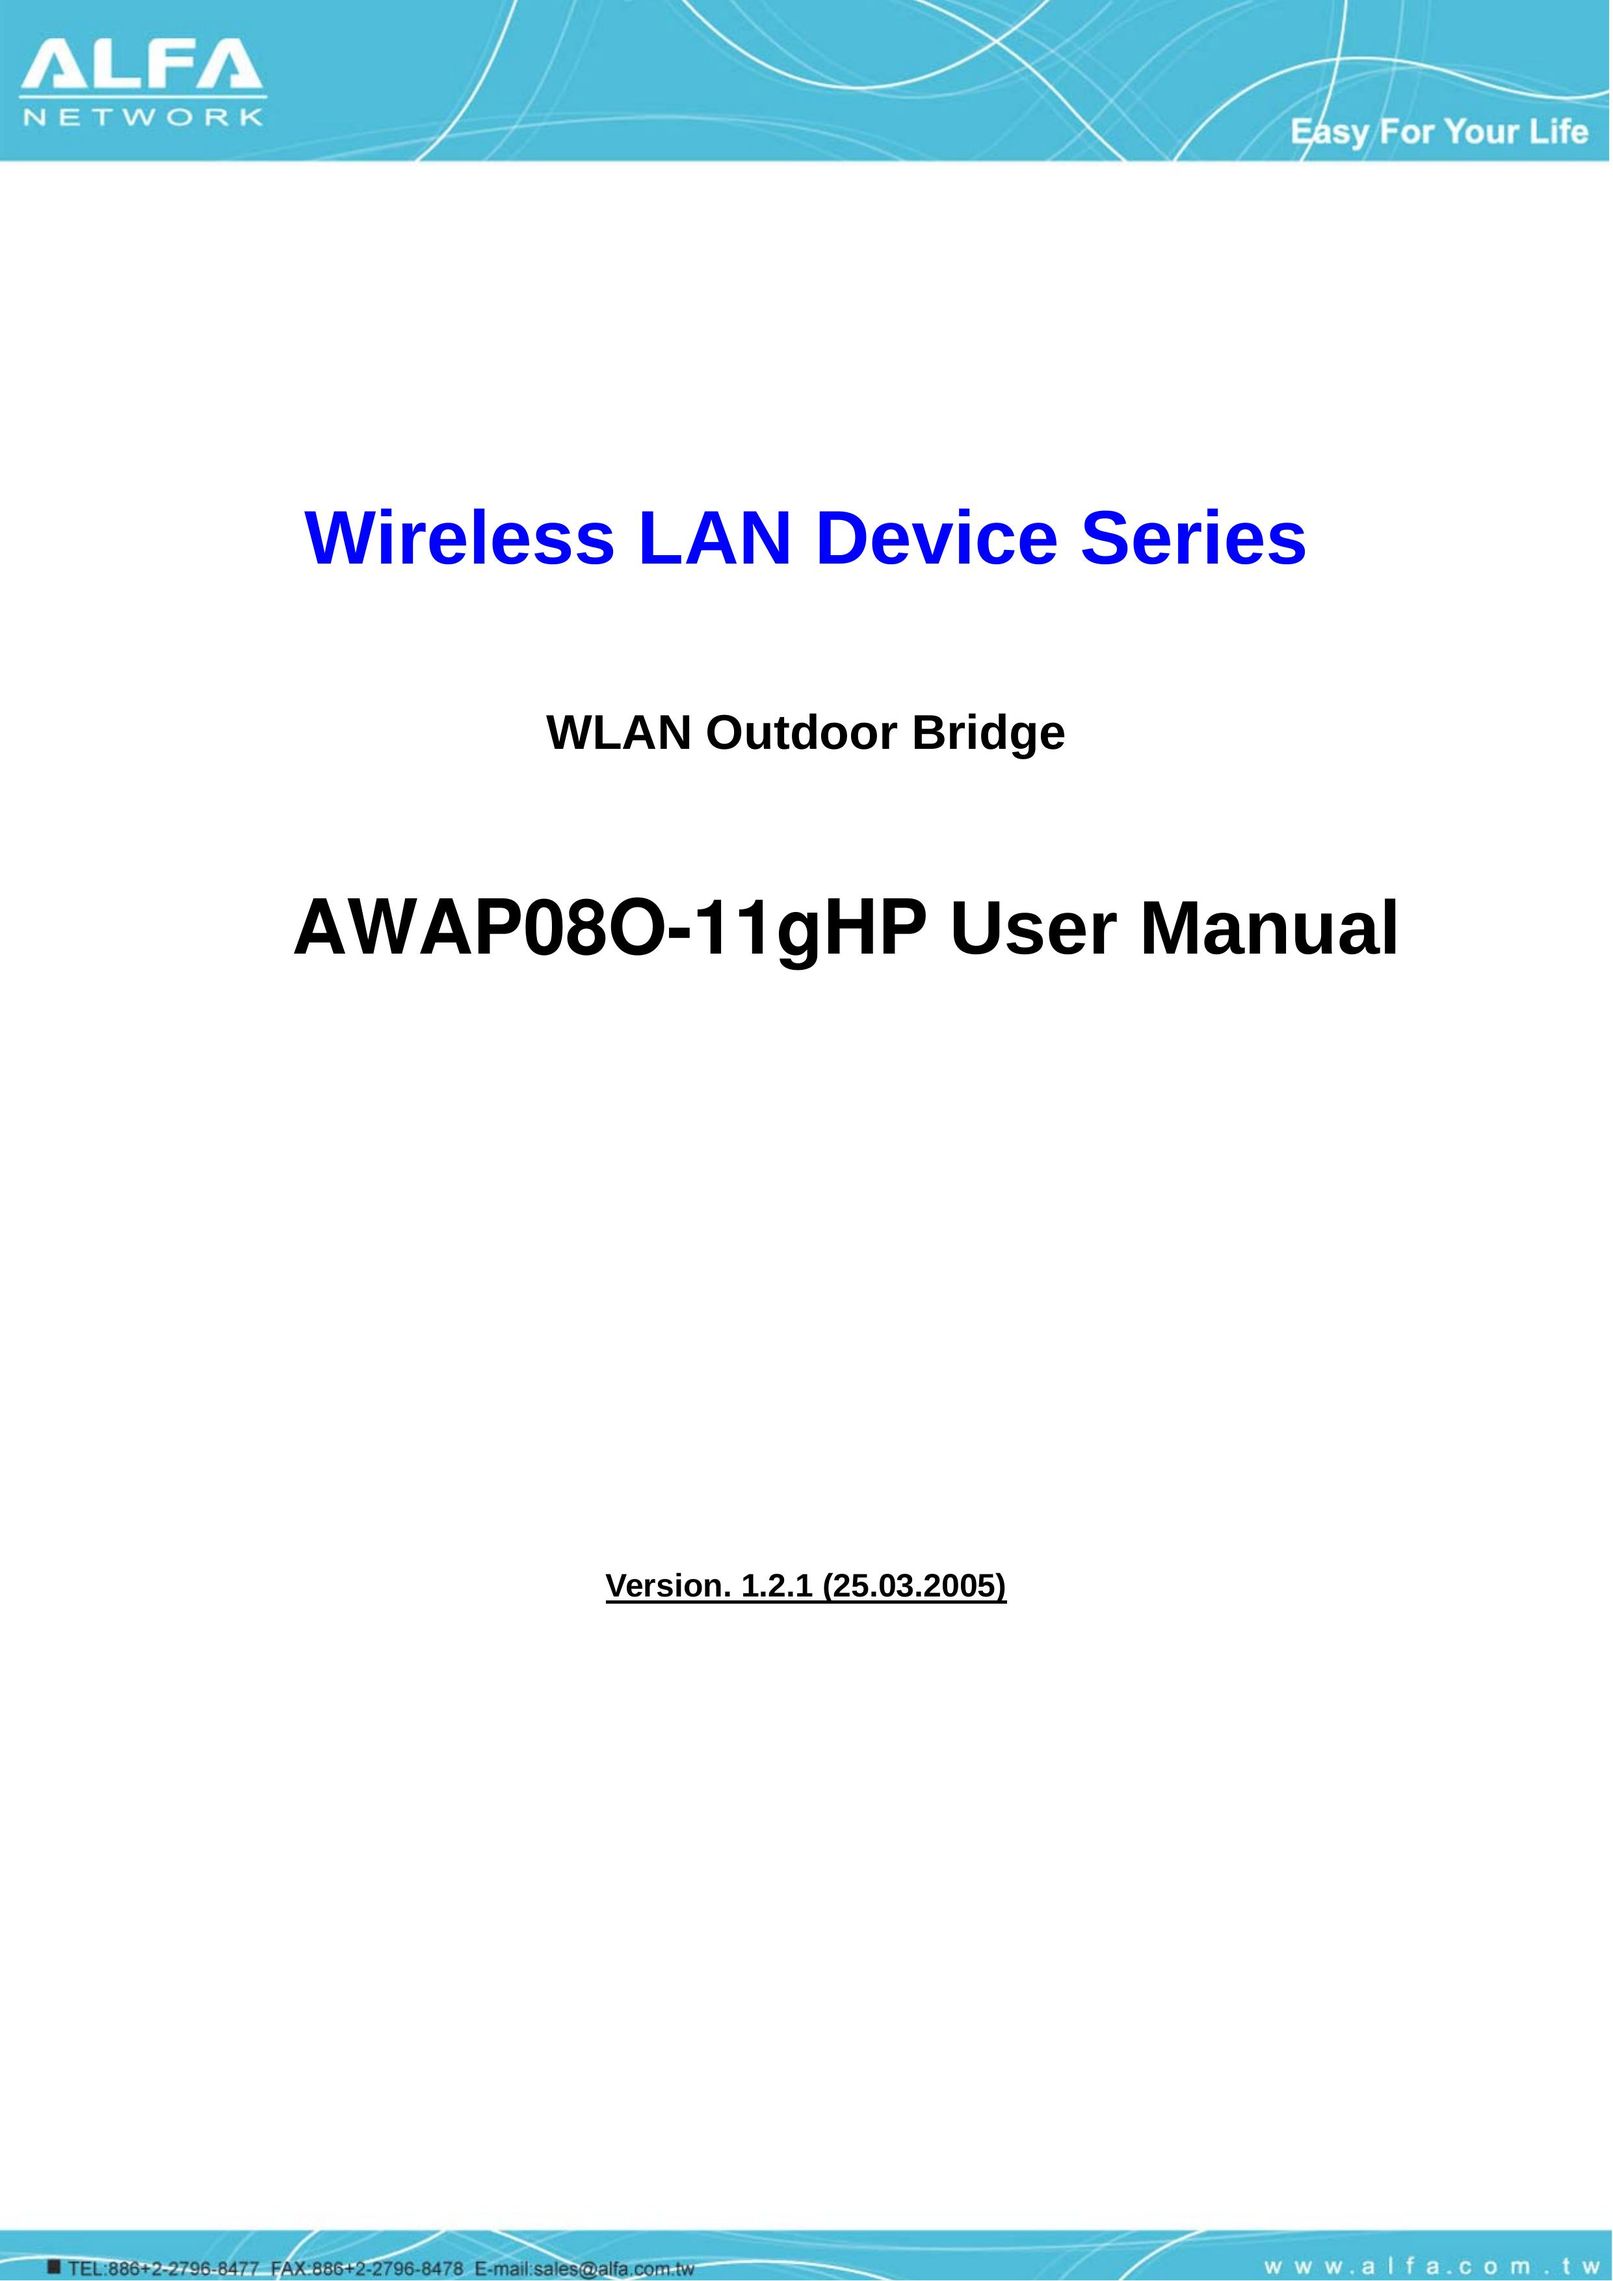 ALFA AWAP08O-11gHP Network Router User Manual